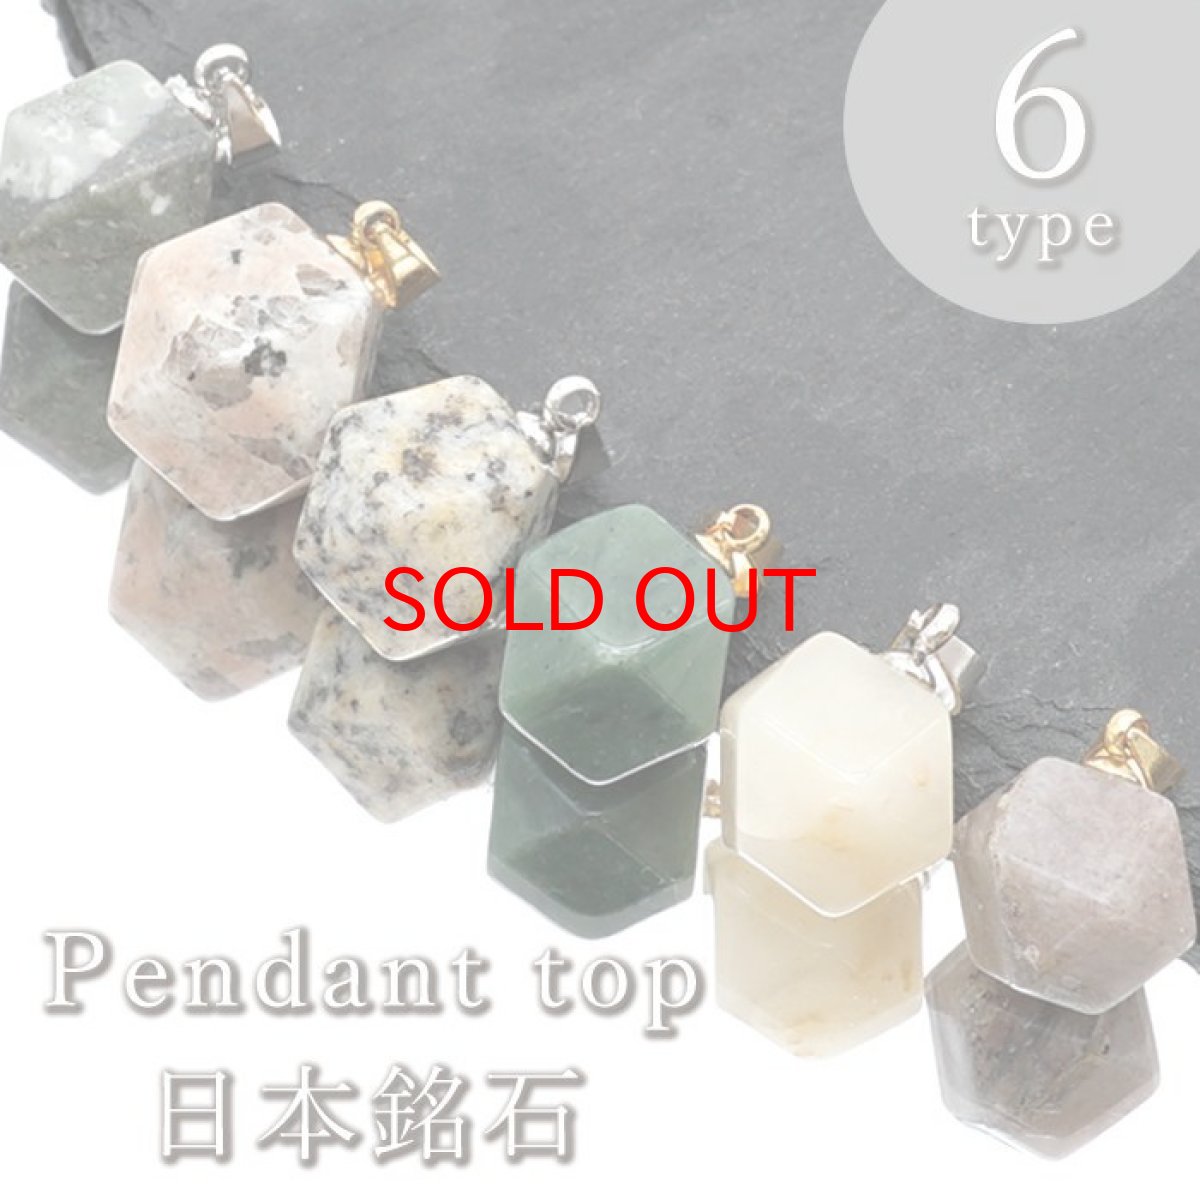 画像1: 【日本の石】 ペンダントトップ 6種類 十四面体 国産 日本製 パワーストーン 天然石 (1)